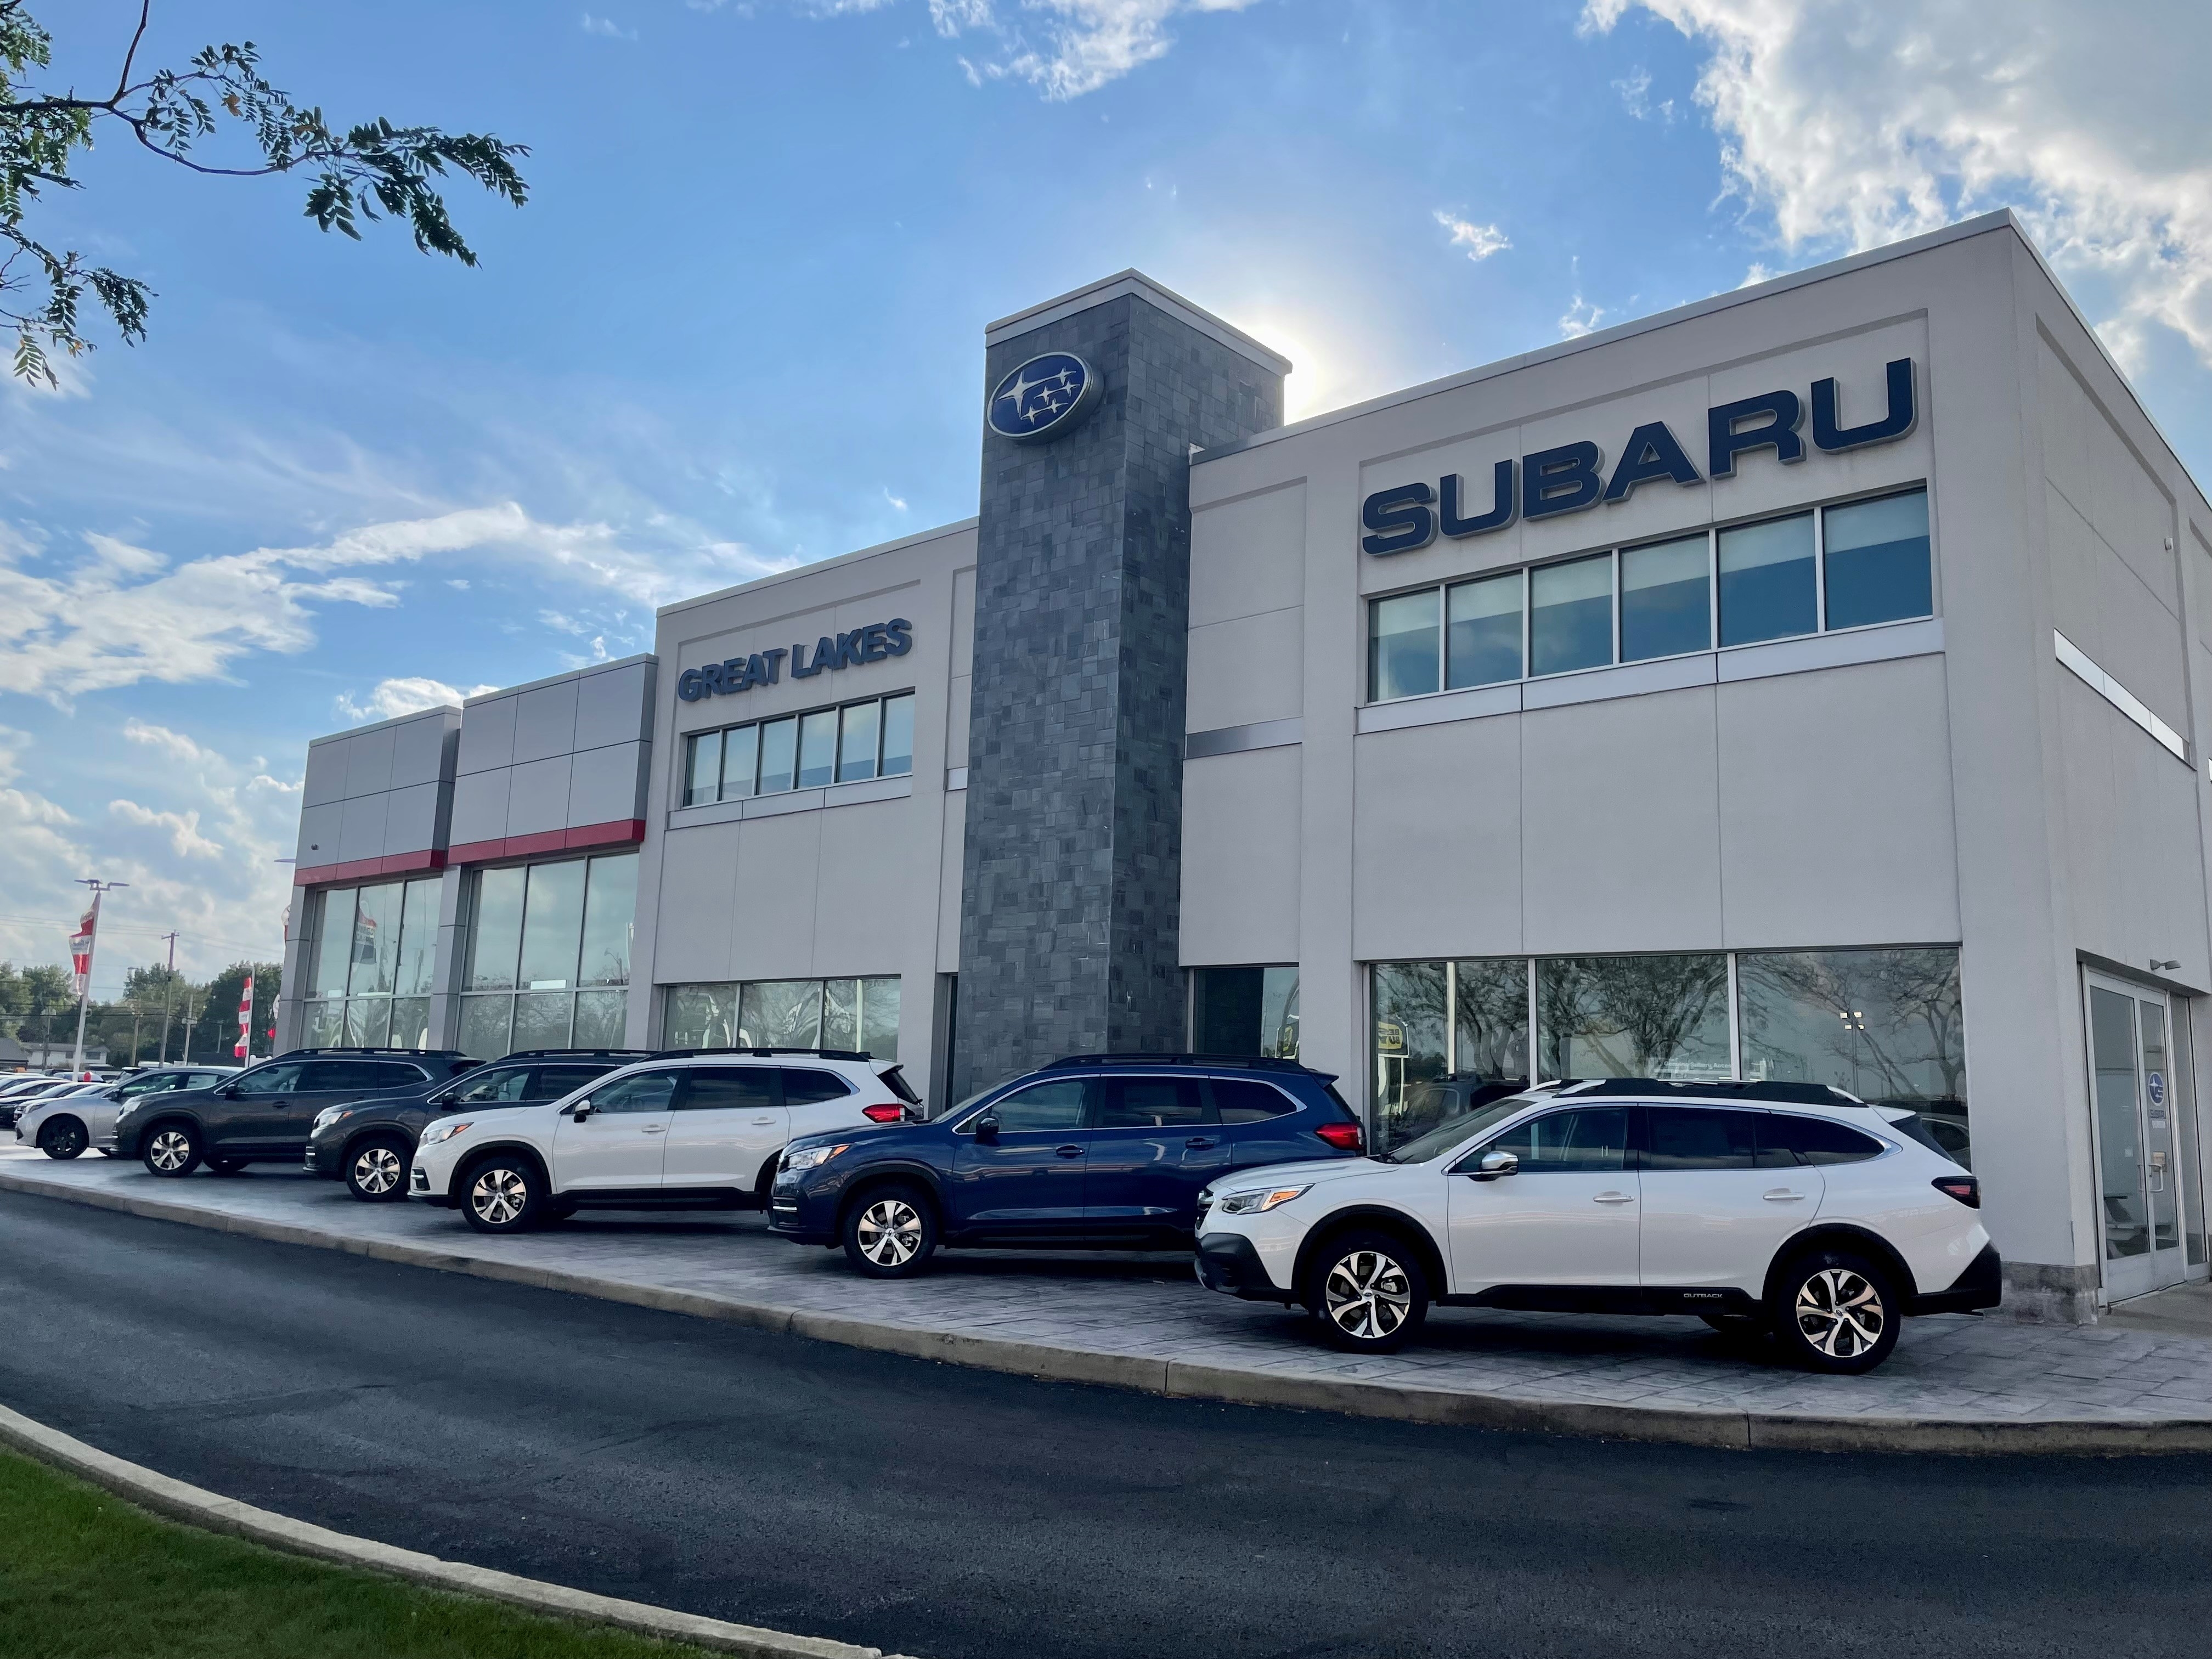 Great Lakes Subaru